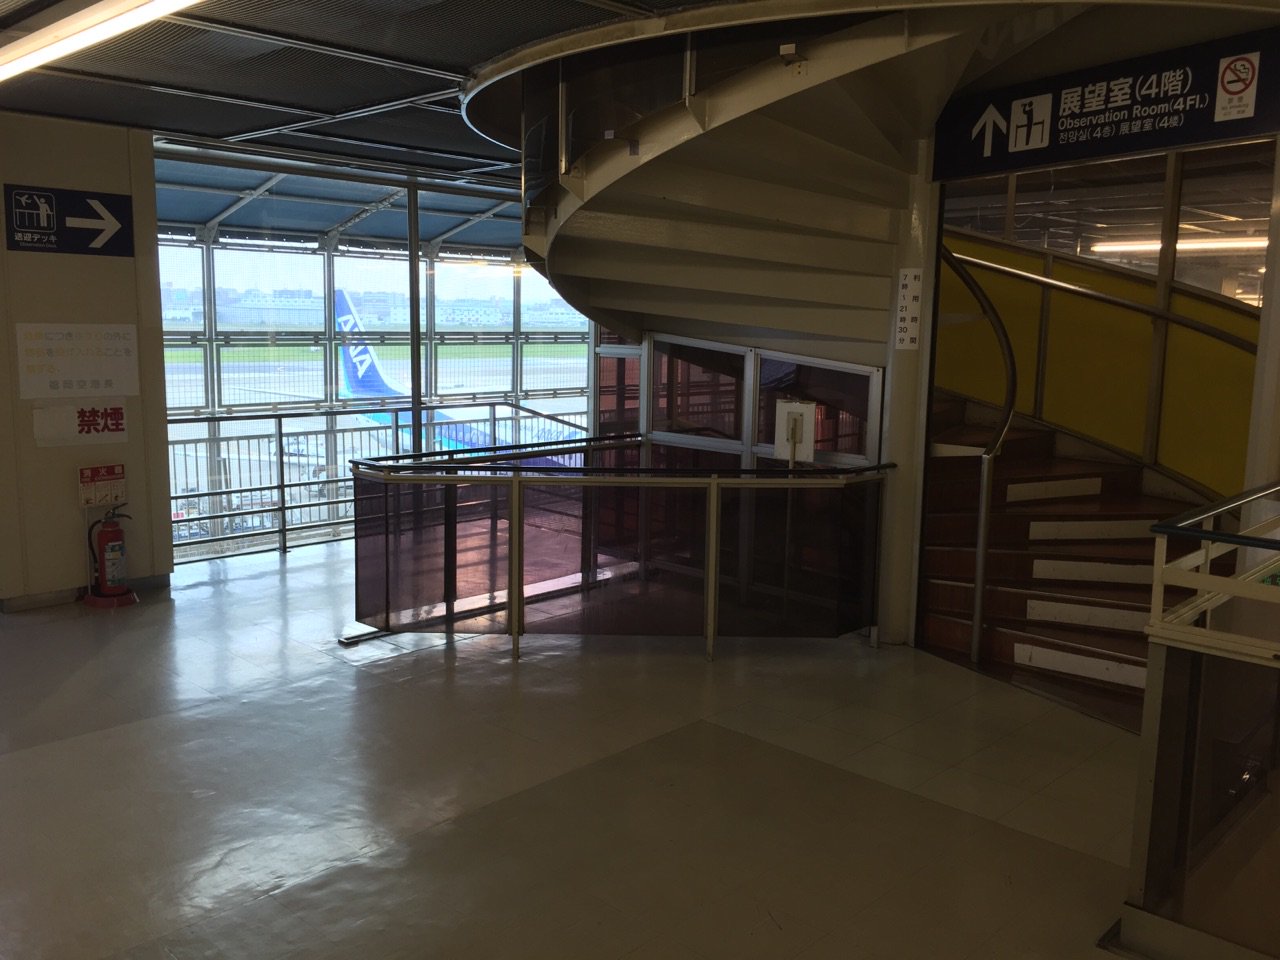 福岡空港 国内線第1ターミナル 3階に送迎デッキ。4階に展望室。 